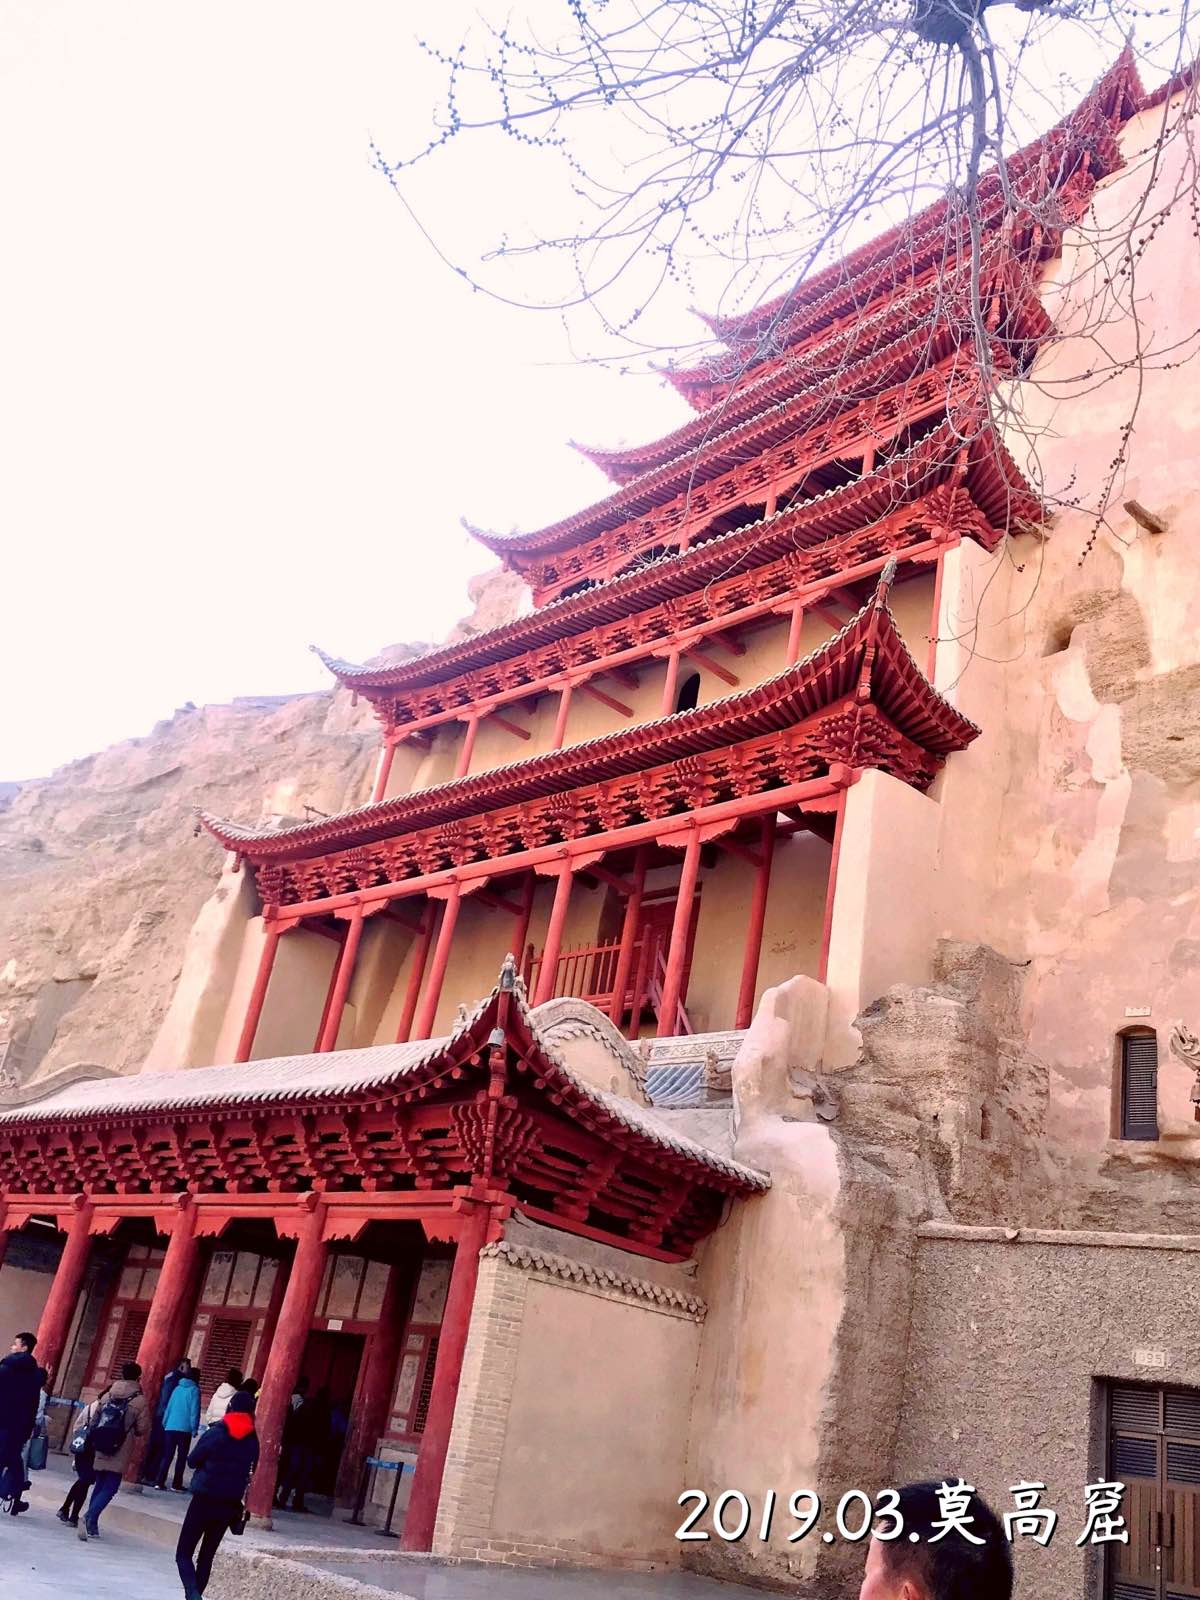 莫高窟原来是世界文化遗产啊，邵逸夫捐款给翻新安的防盗门。